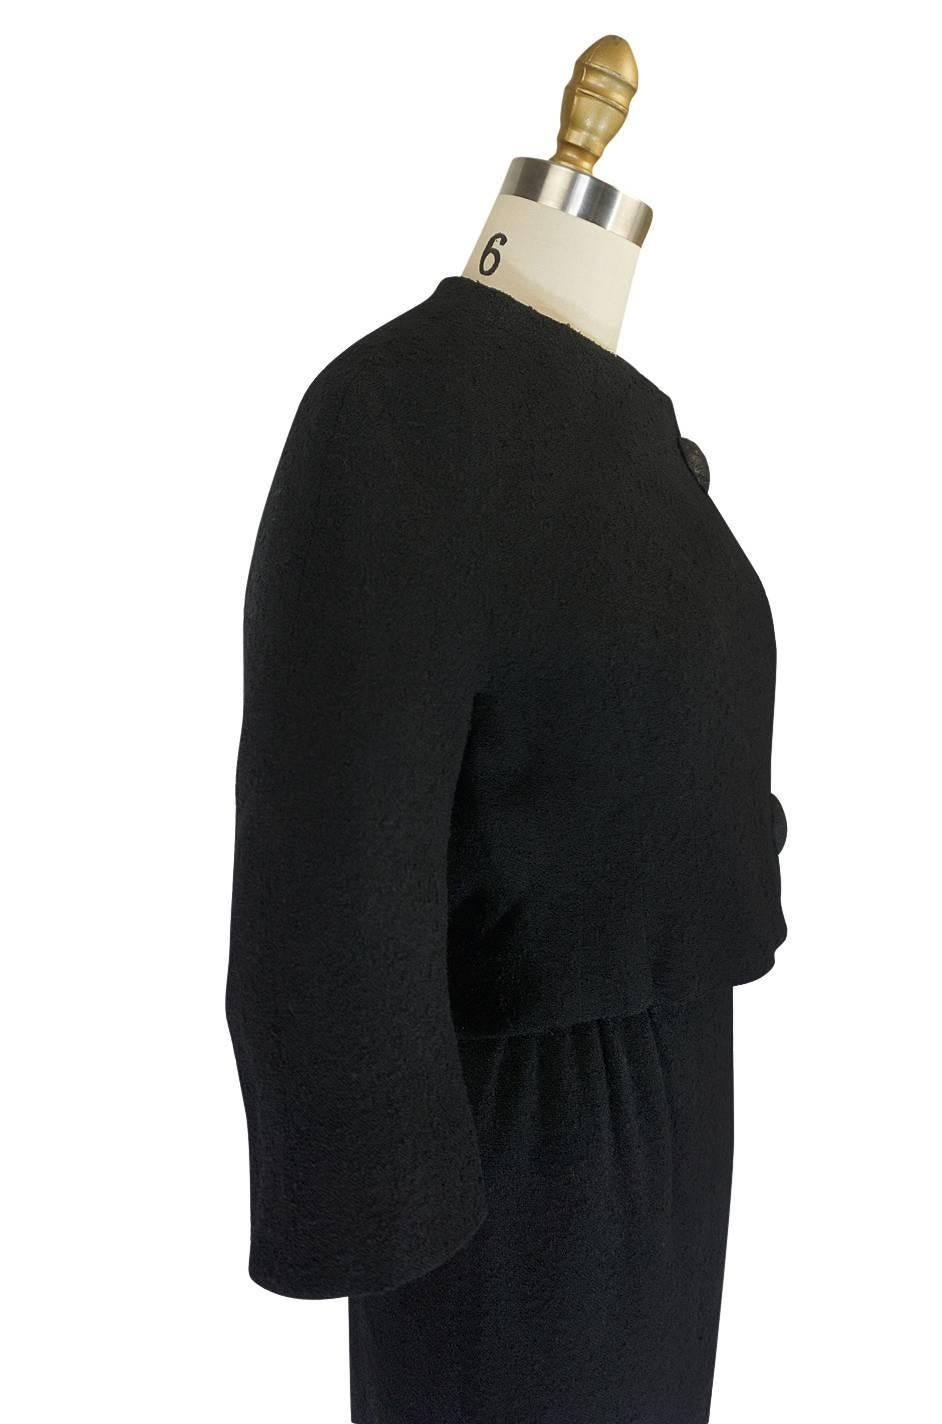 c1957 Black Cristobal Balenciaga Haute Couture Suit 2